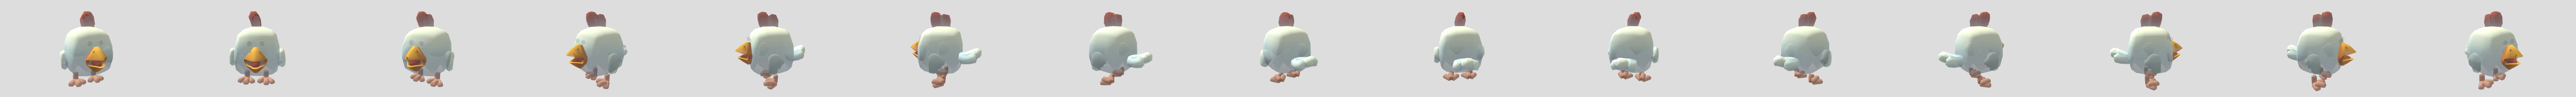 Chicken Gun - 3D model by Meri L. (@azurehusky) [3a91fd9]